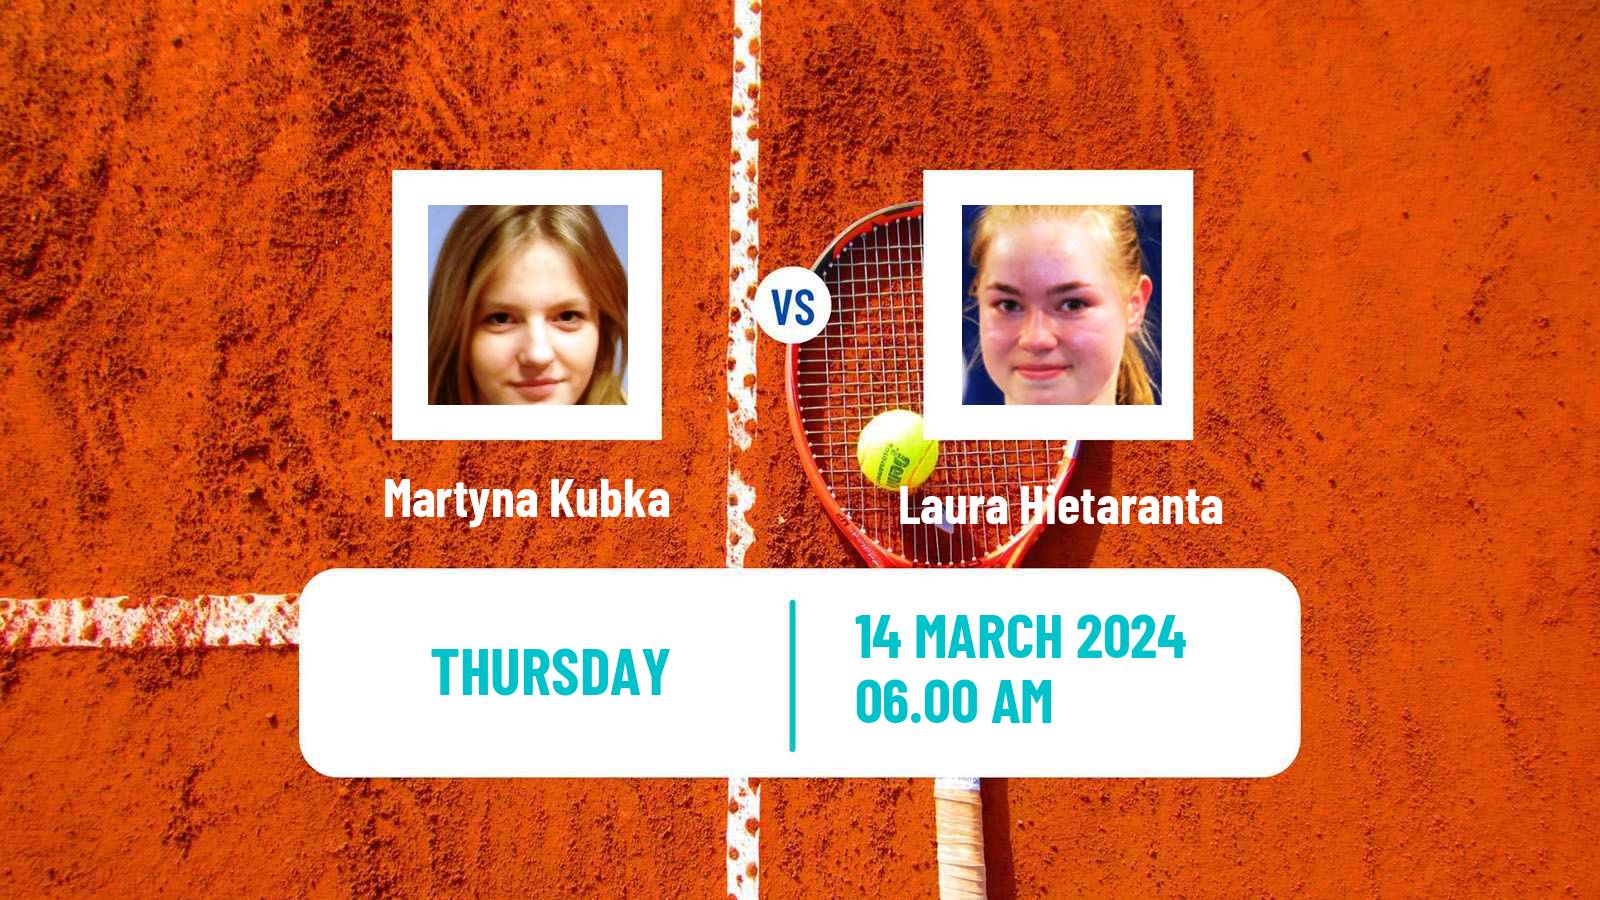 Tennis ITF W35 Solarino 2 Women Martyna Kubka - Laura Hietaranta